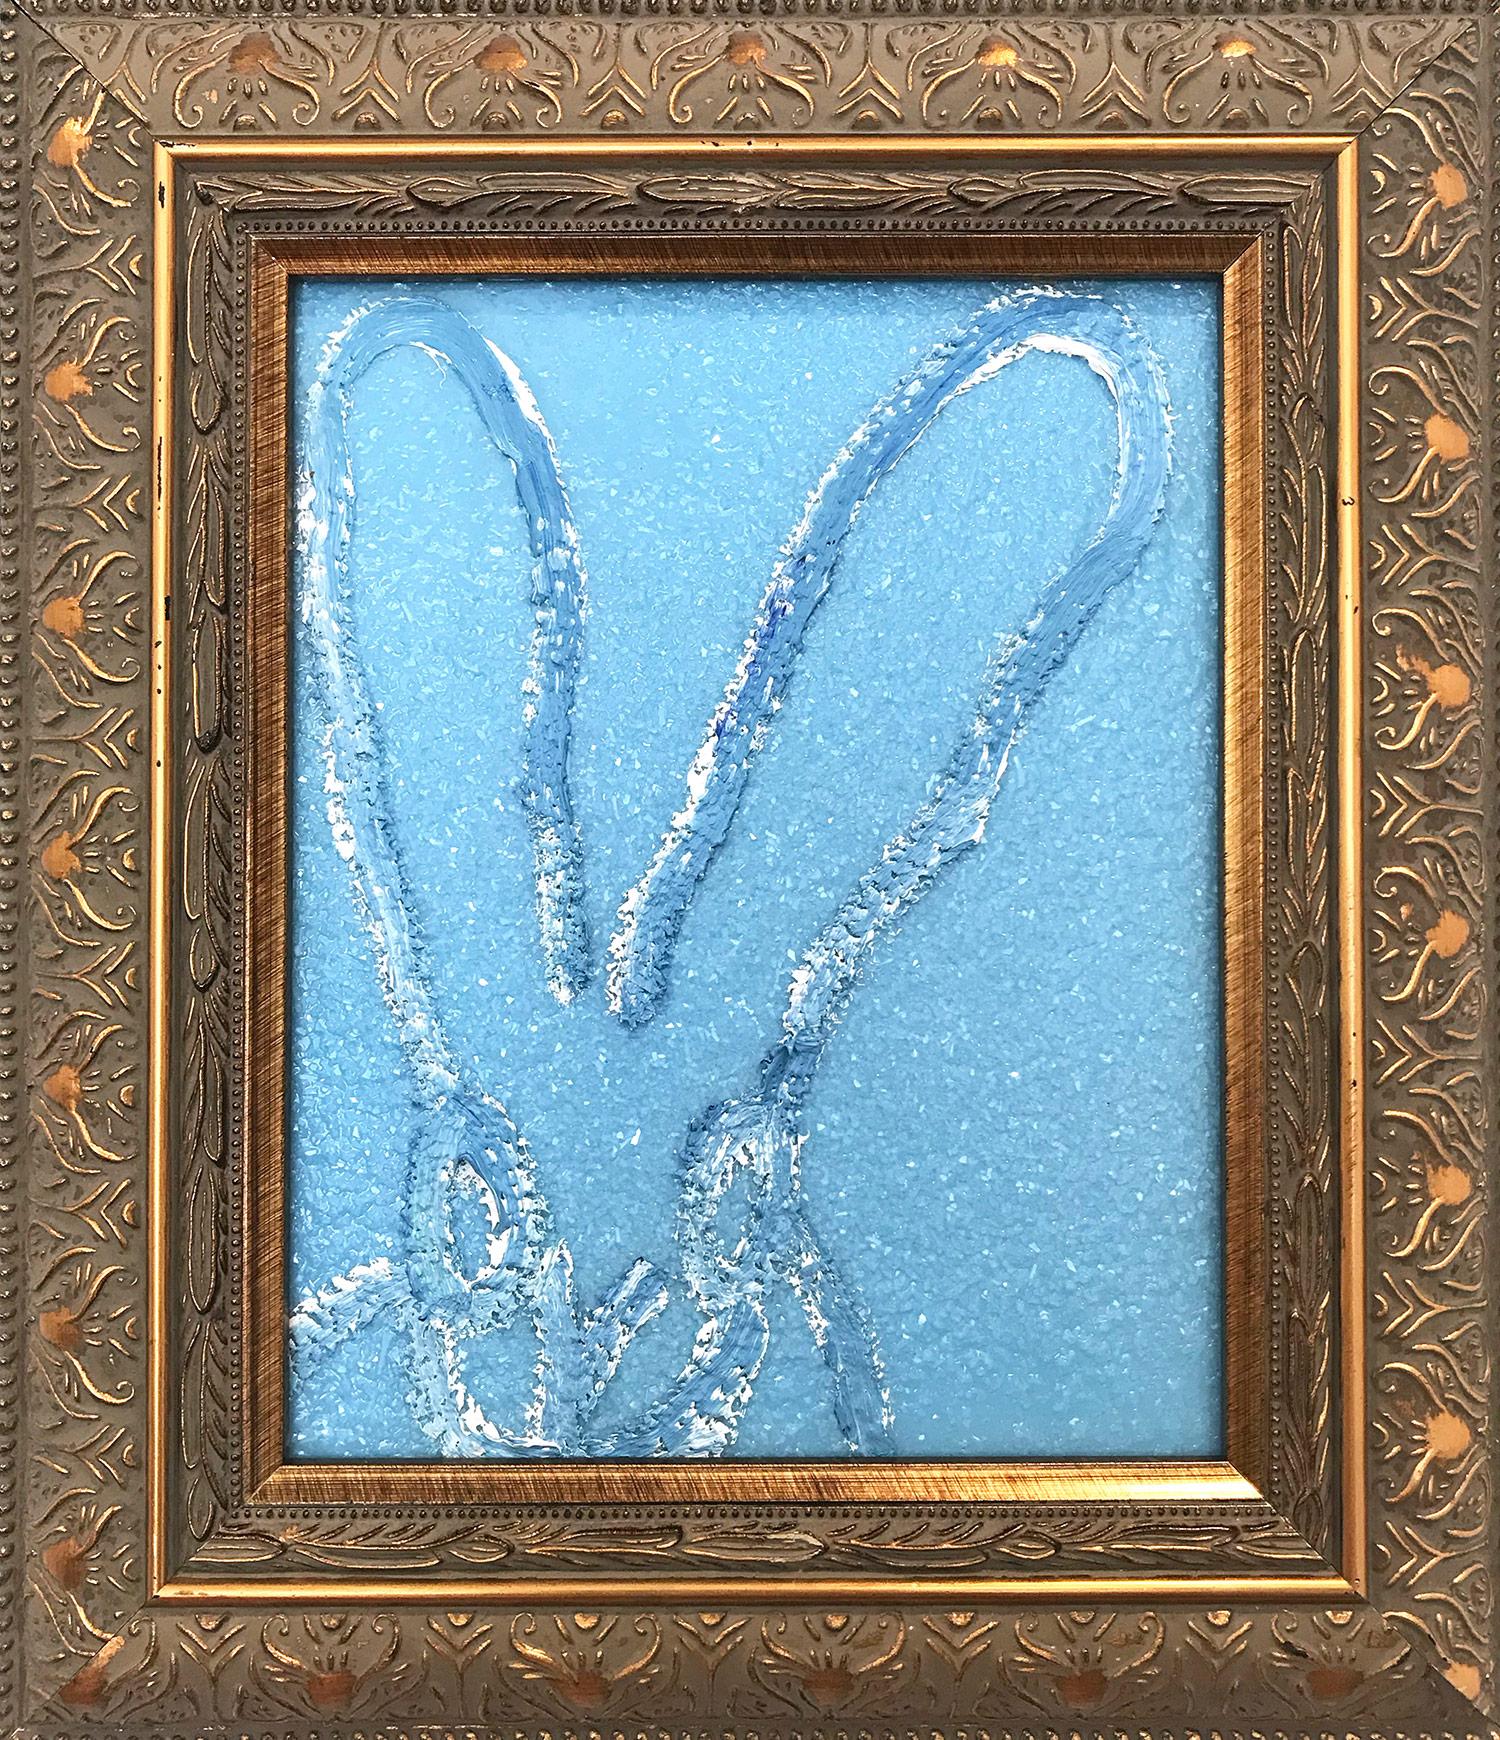 Hunt Slonem Animal Painting - "Saphire" (Diamond Dust Bunny on Light Blue)